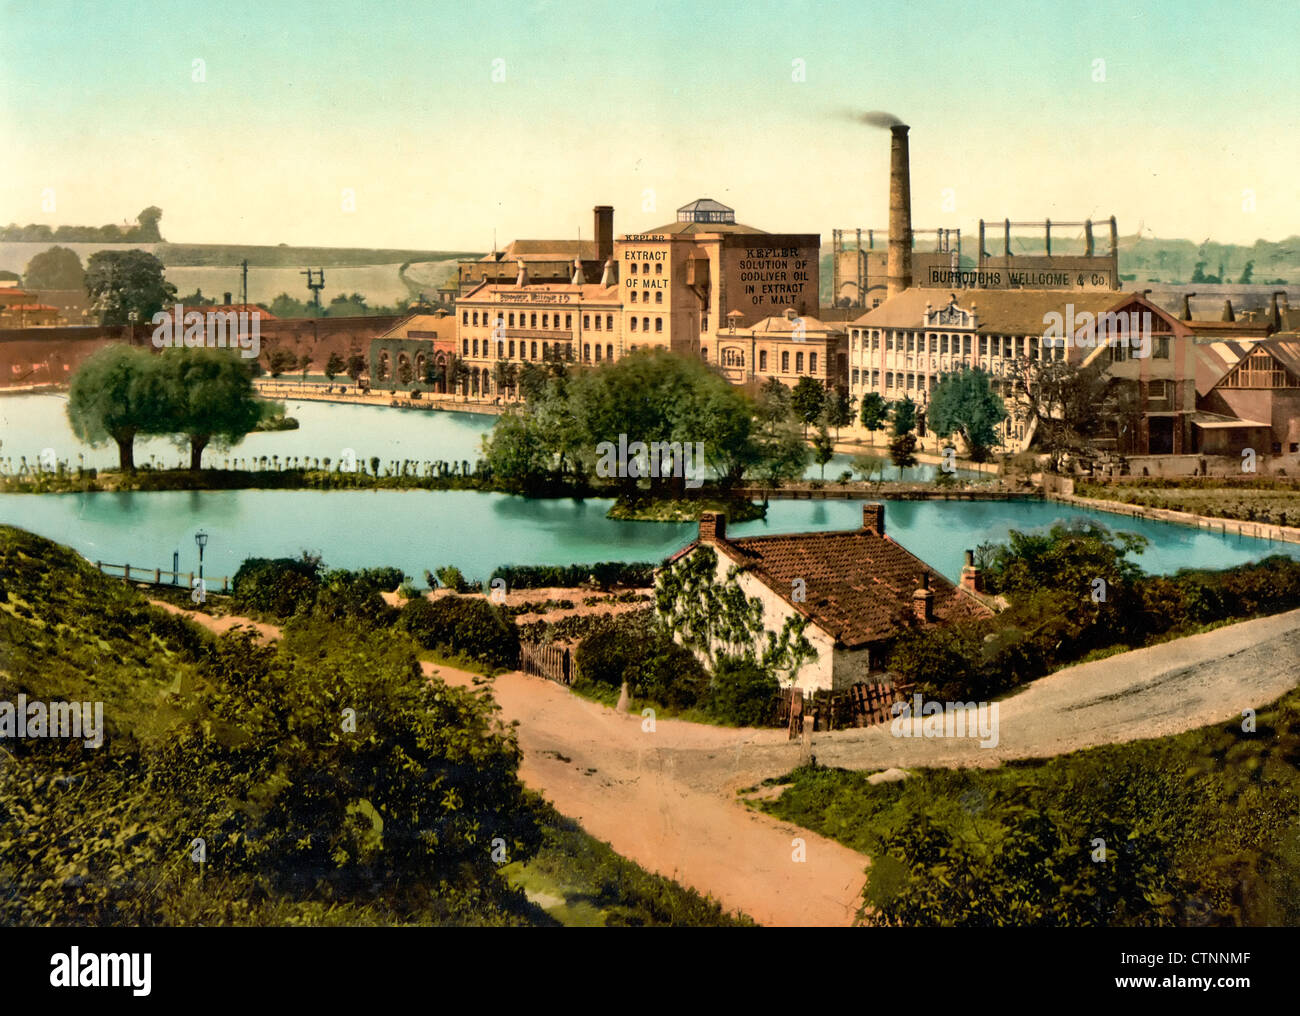 Dartford, Burroughs Wellcome, & Company à Londres, l'usine et les banlieues, Angleterre, RU, 1900 Banque D'Images